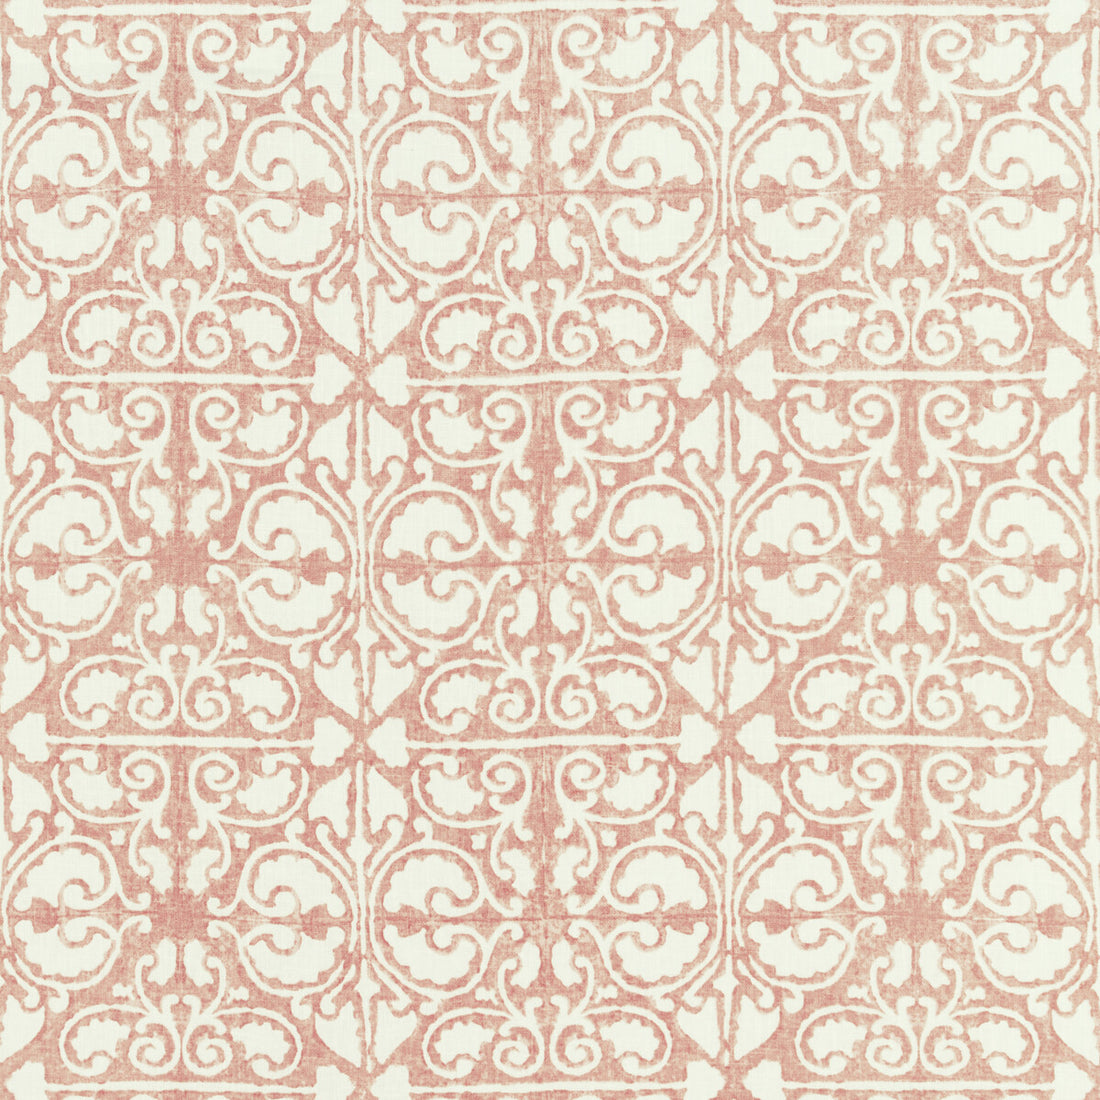 Kravet Basics fabric in agra tile-17 color - pattern AGRA TILE.17.0 - by Kravet Basics in the L&